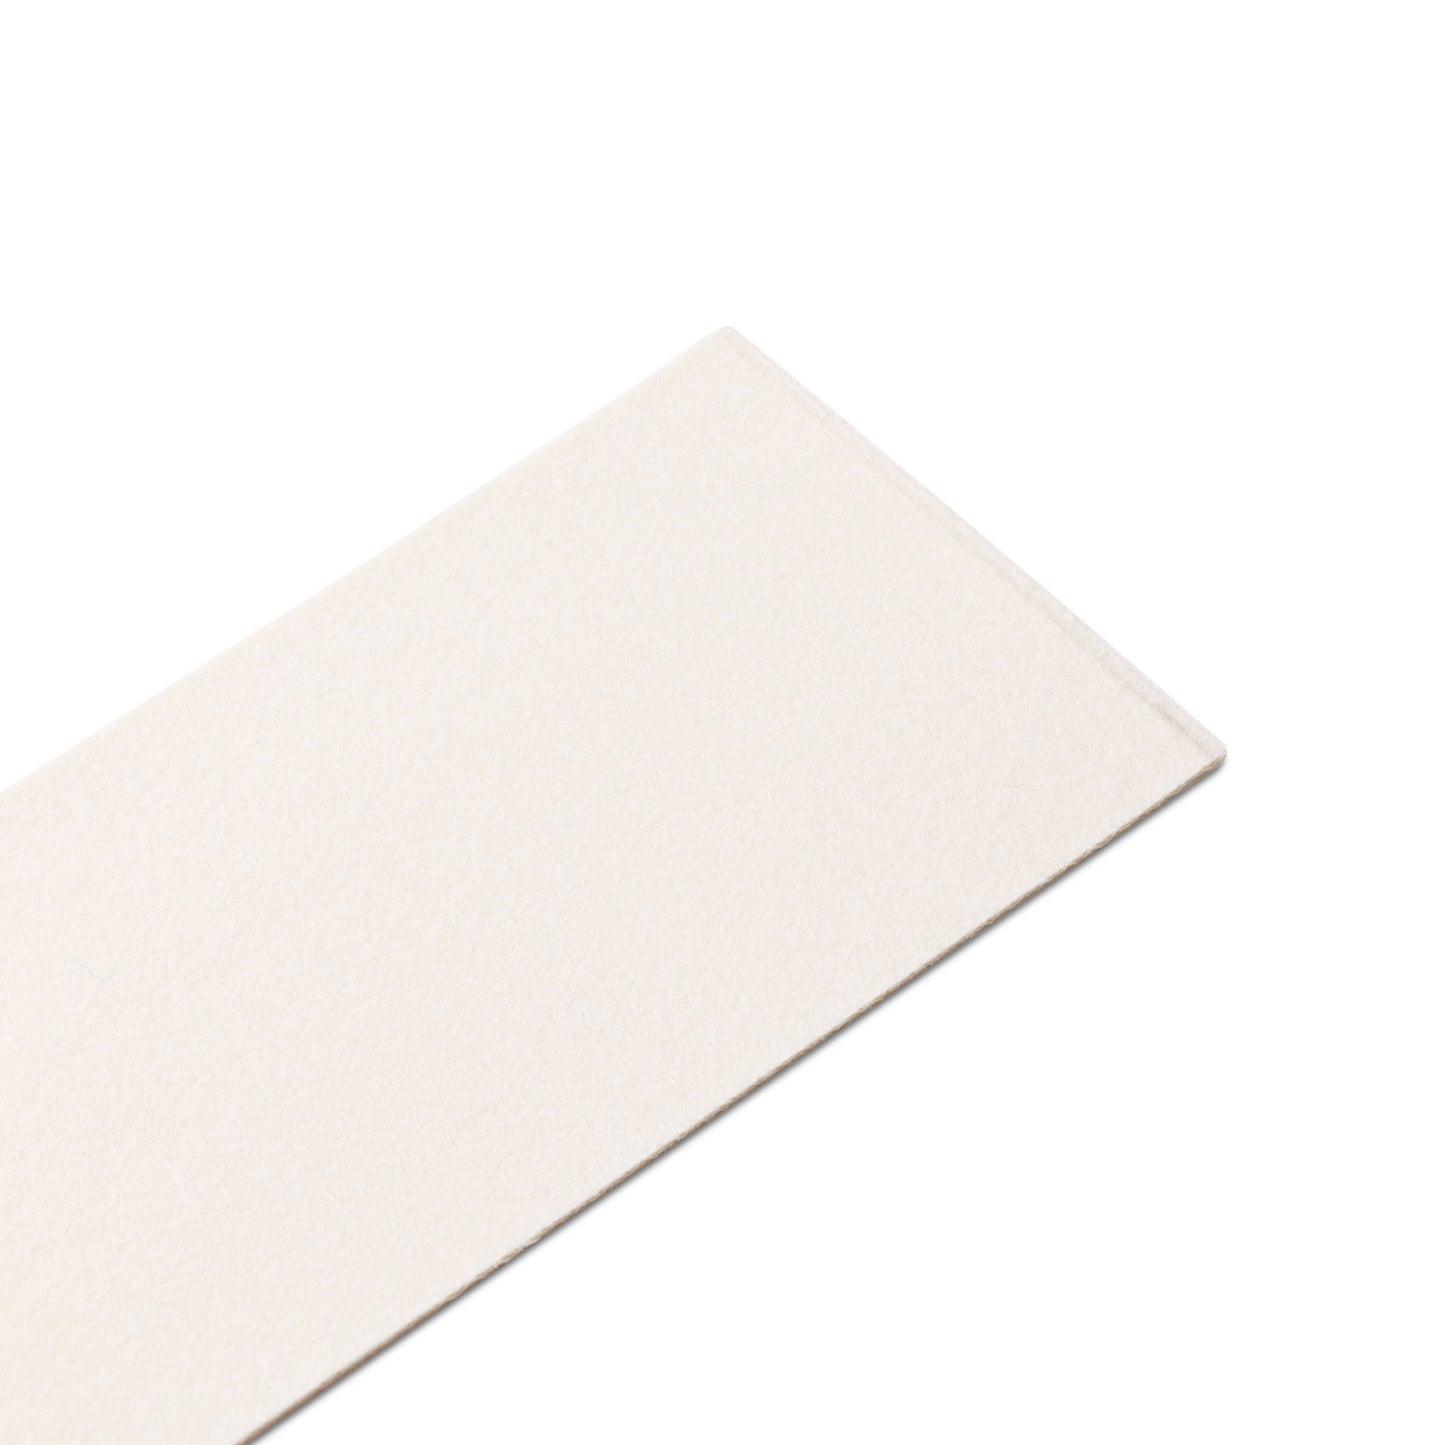 Box Cloth | White